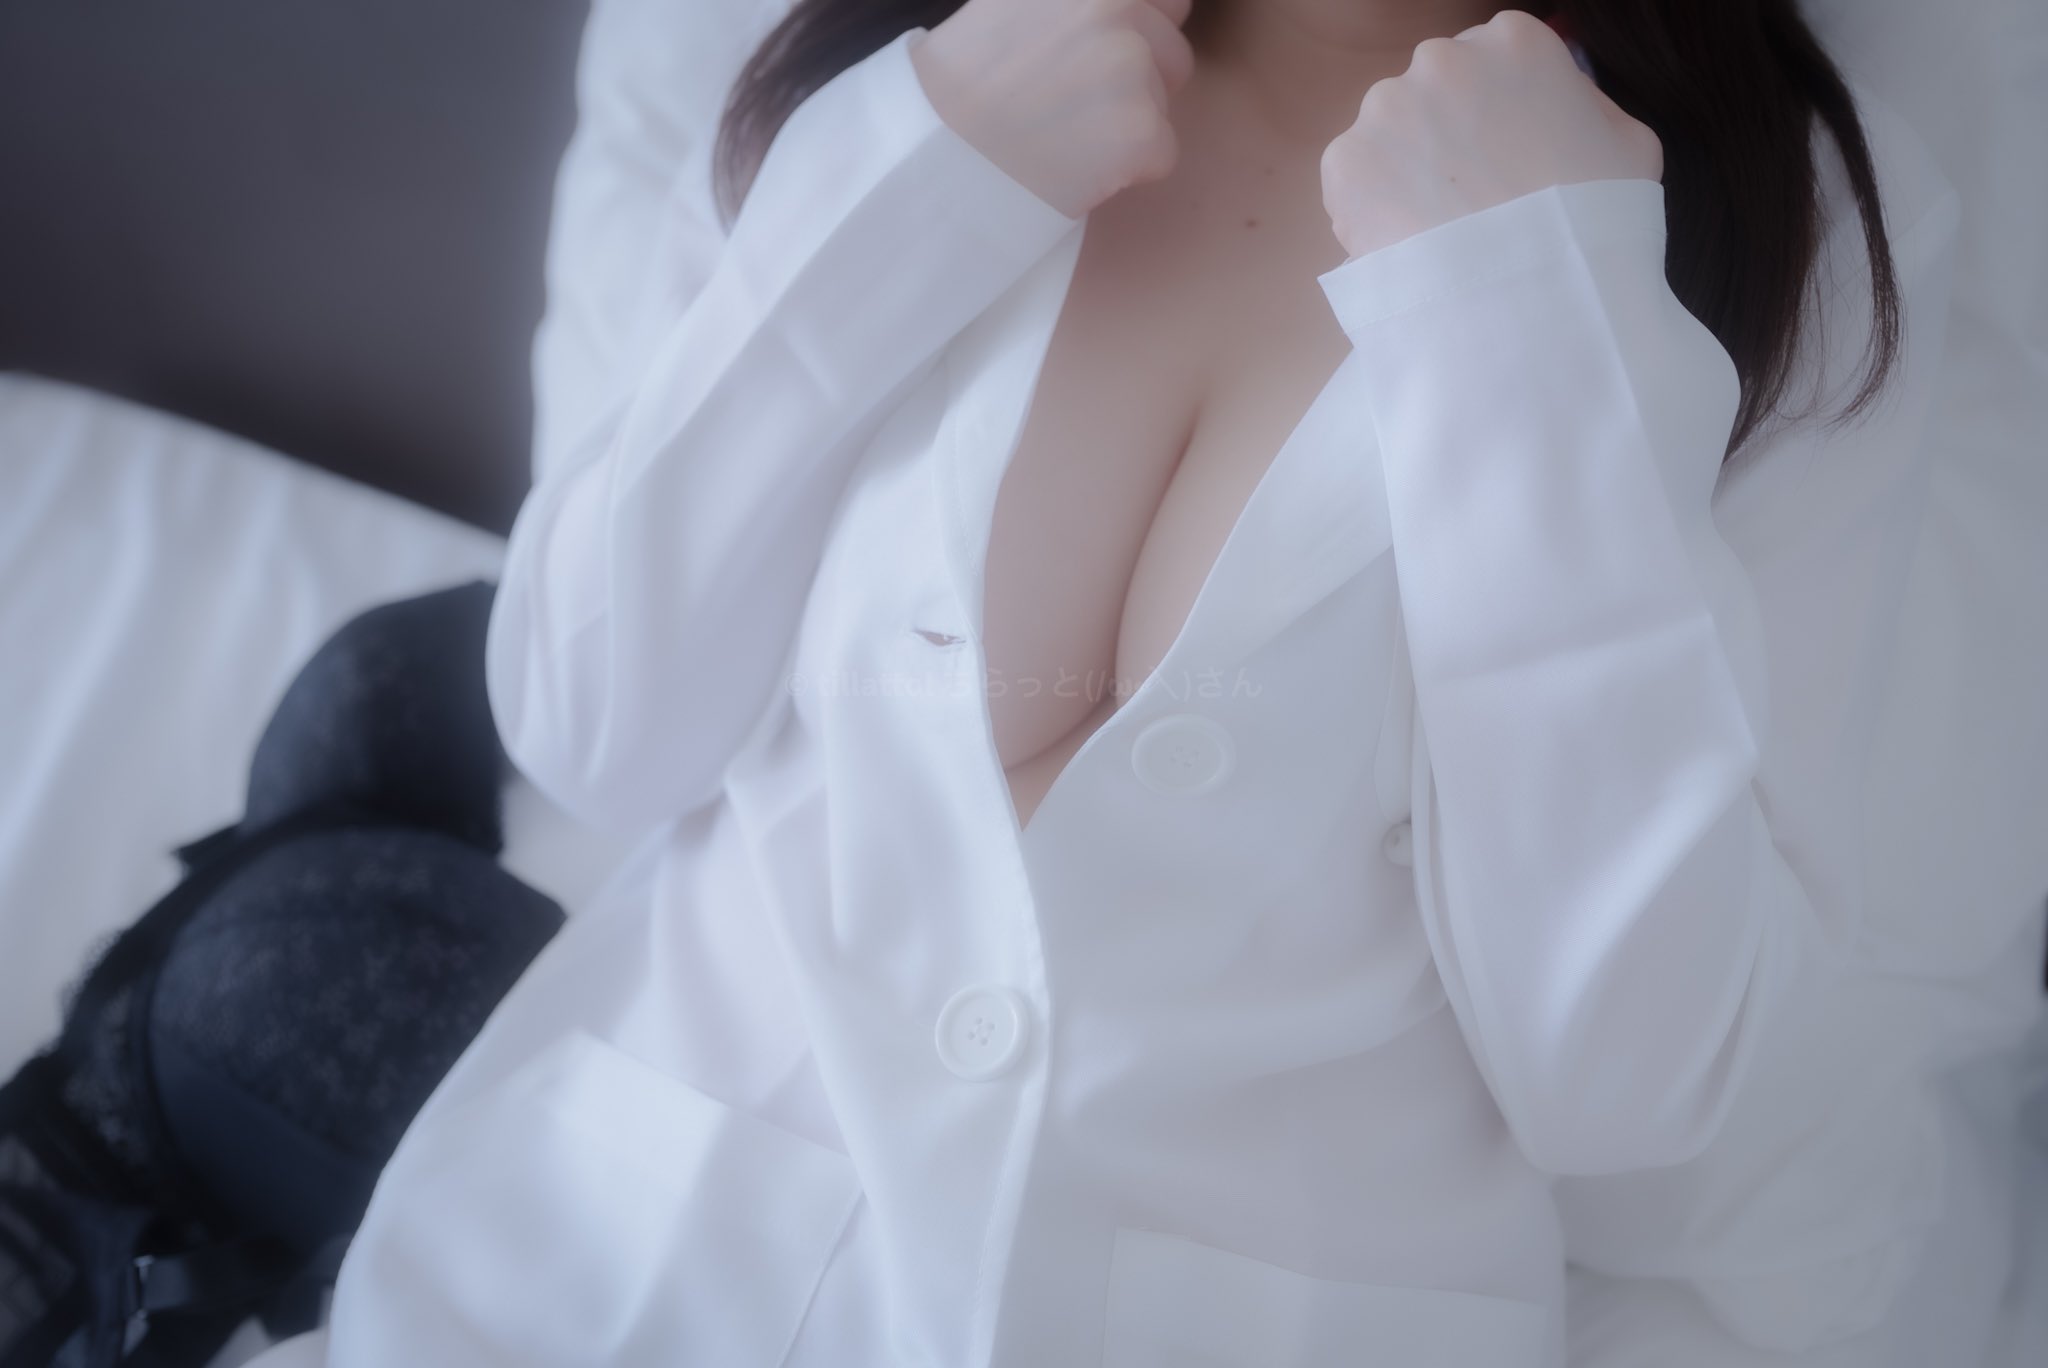 People 2048x1368 Asian boobs women cleavage tillattol